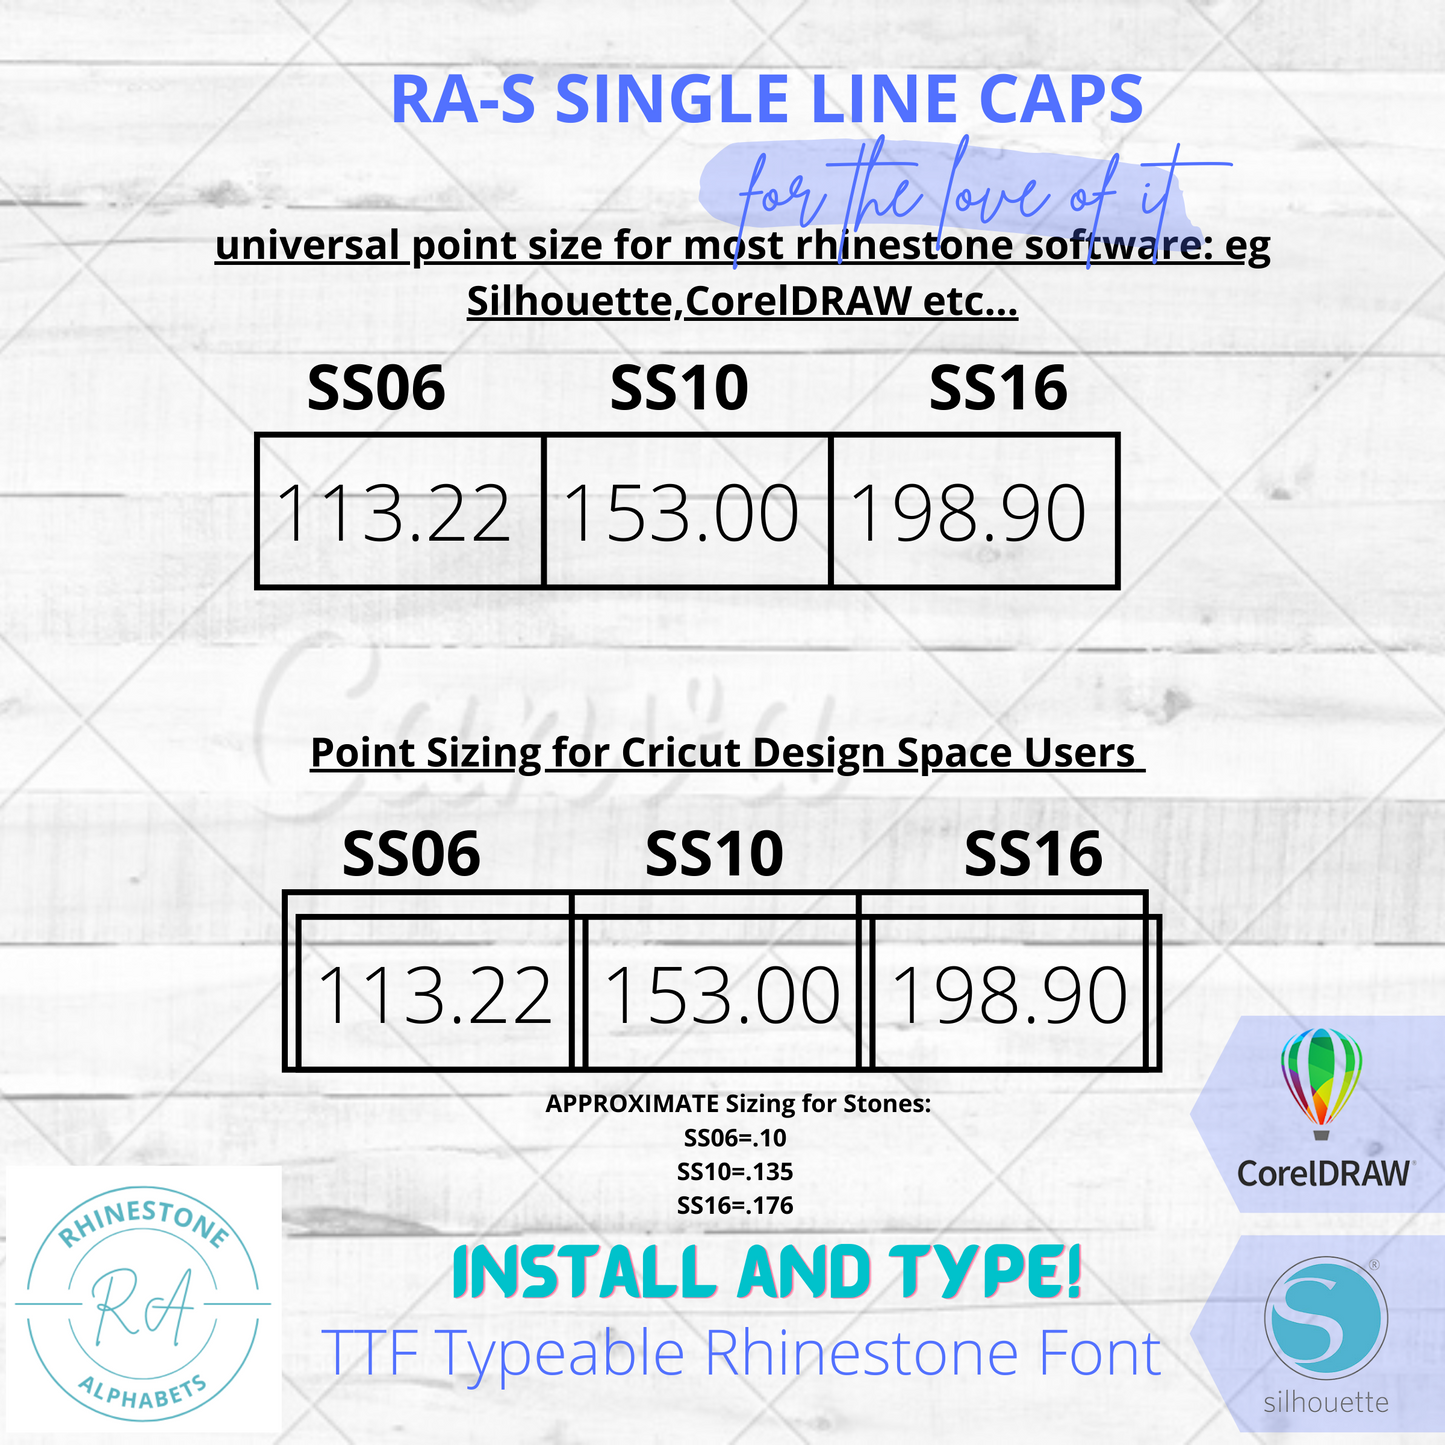 RA-S Singleline Caps